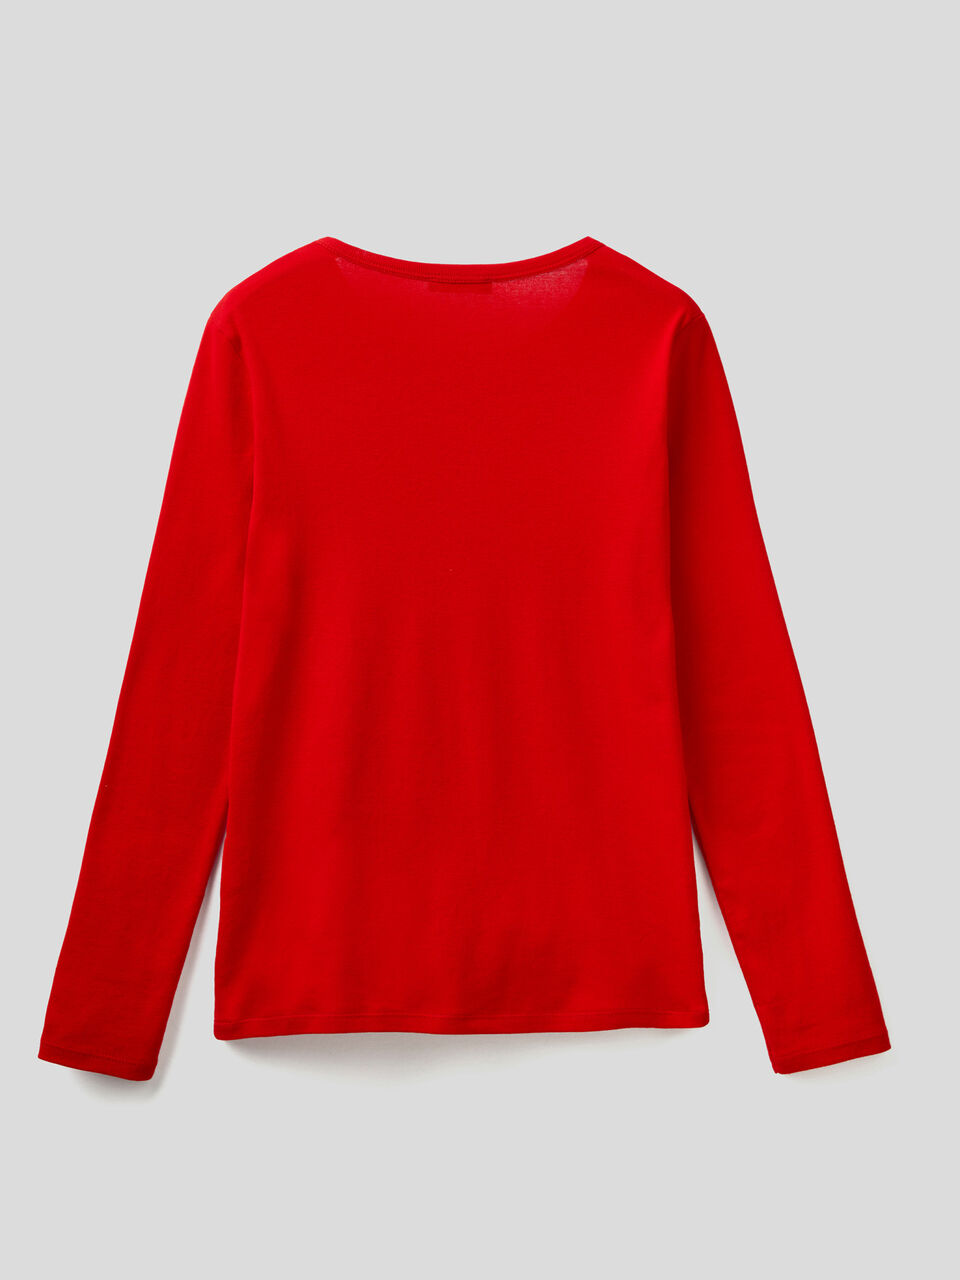 Camiseta roja manga de 100 % algodón - Rojo |